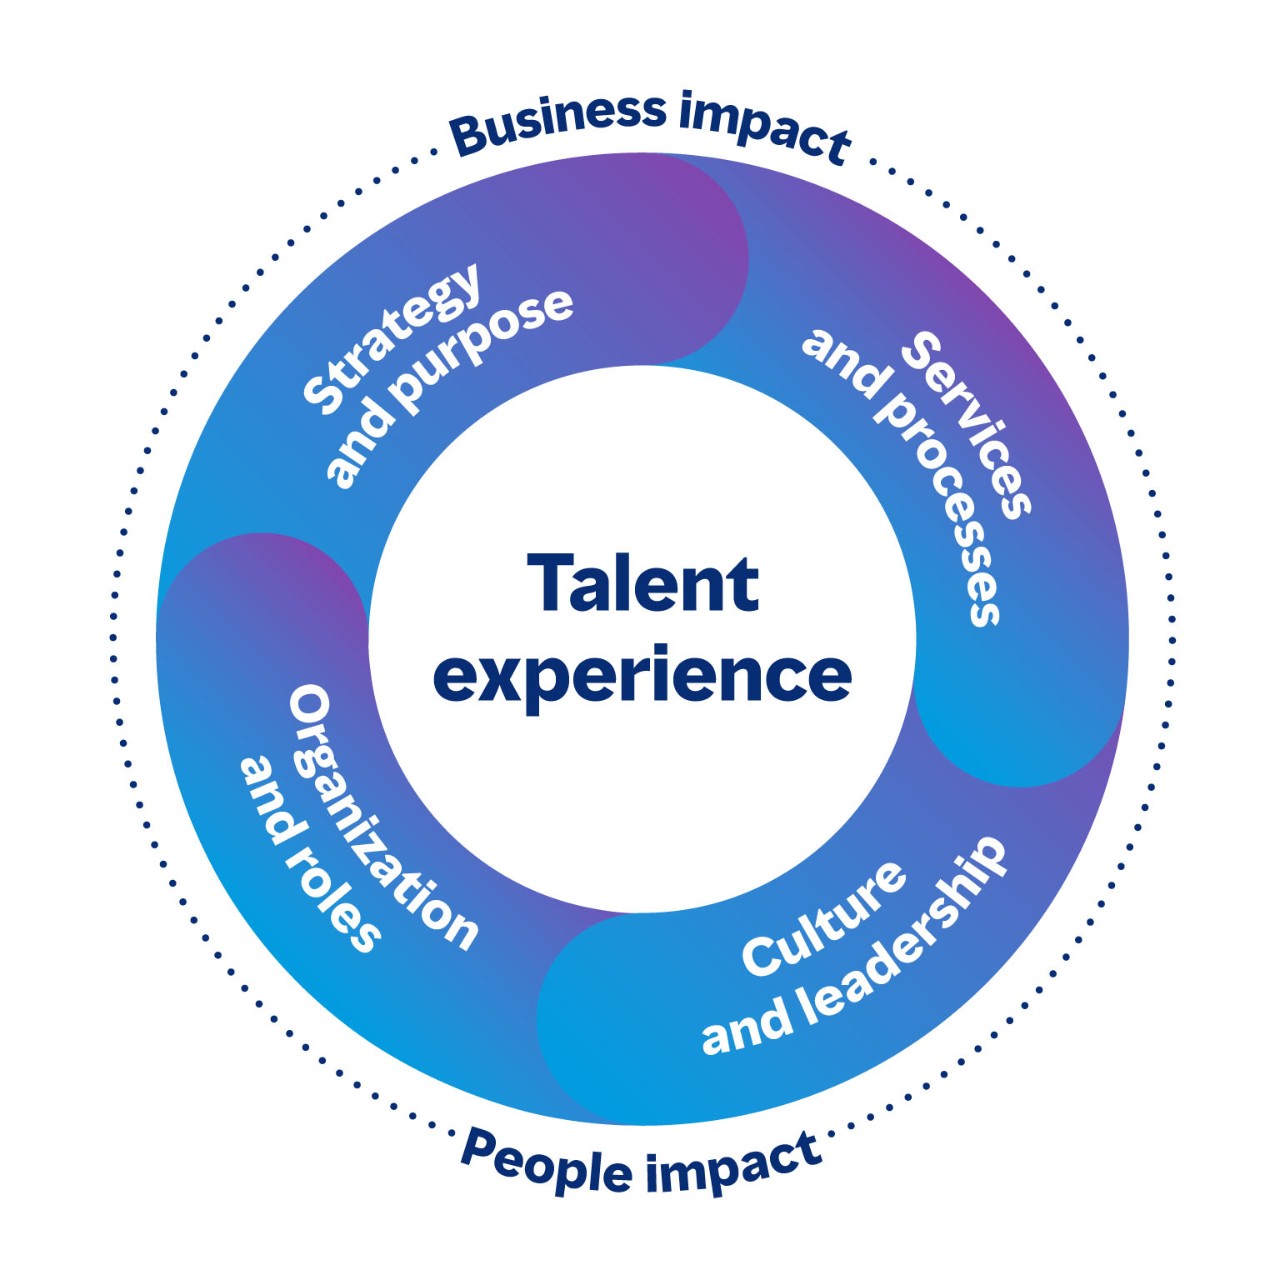 Cirkulært billede, der viser de forbundne områder af medarbejderoplevelsen, der har både en forretningsmæssig og menneskelig effekt. De fire områder er Strategi og formål, Tjenester og processer, Kultur og lederskab, samt Organisation og roller.